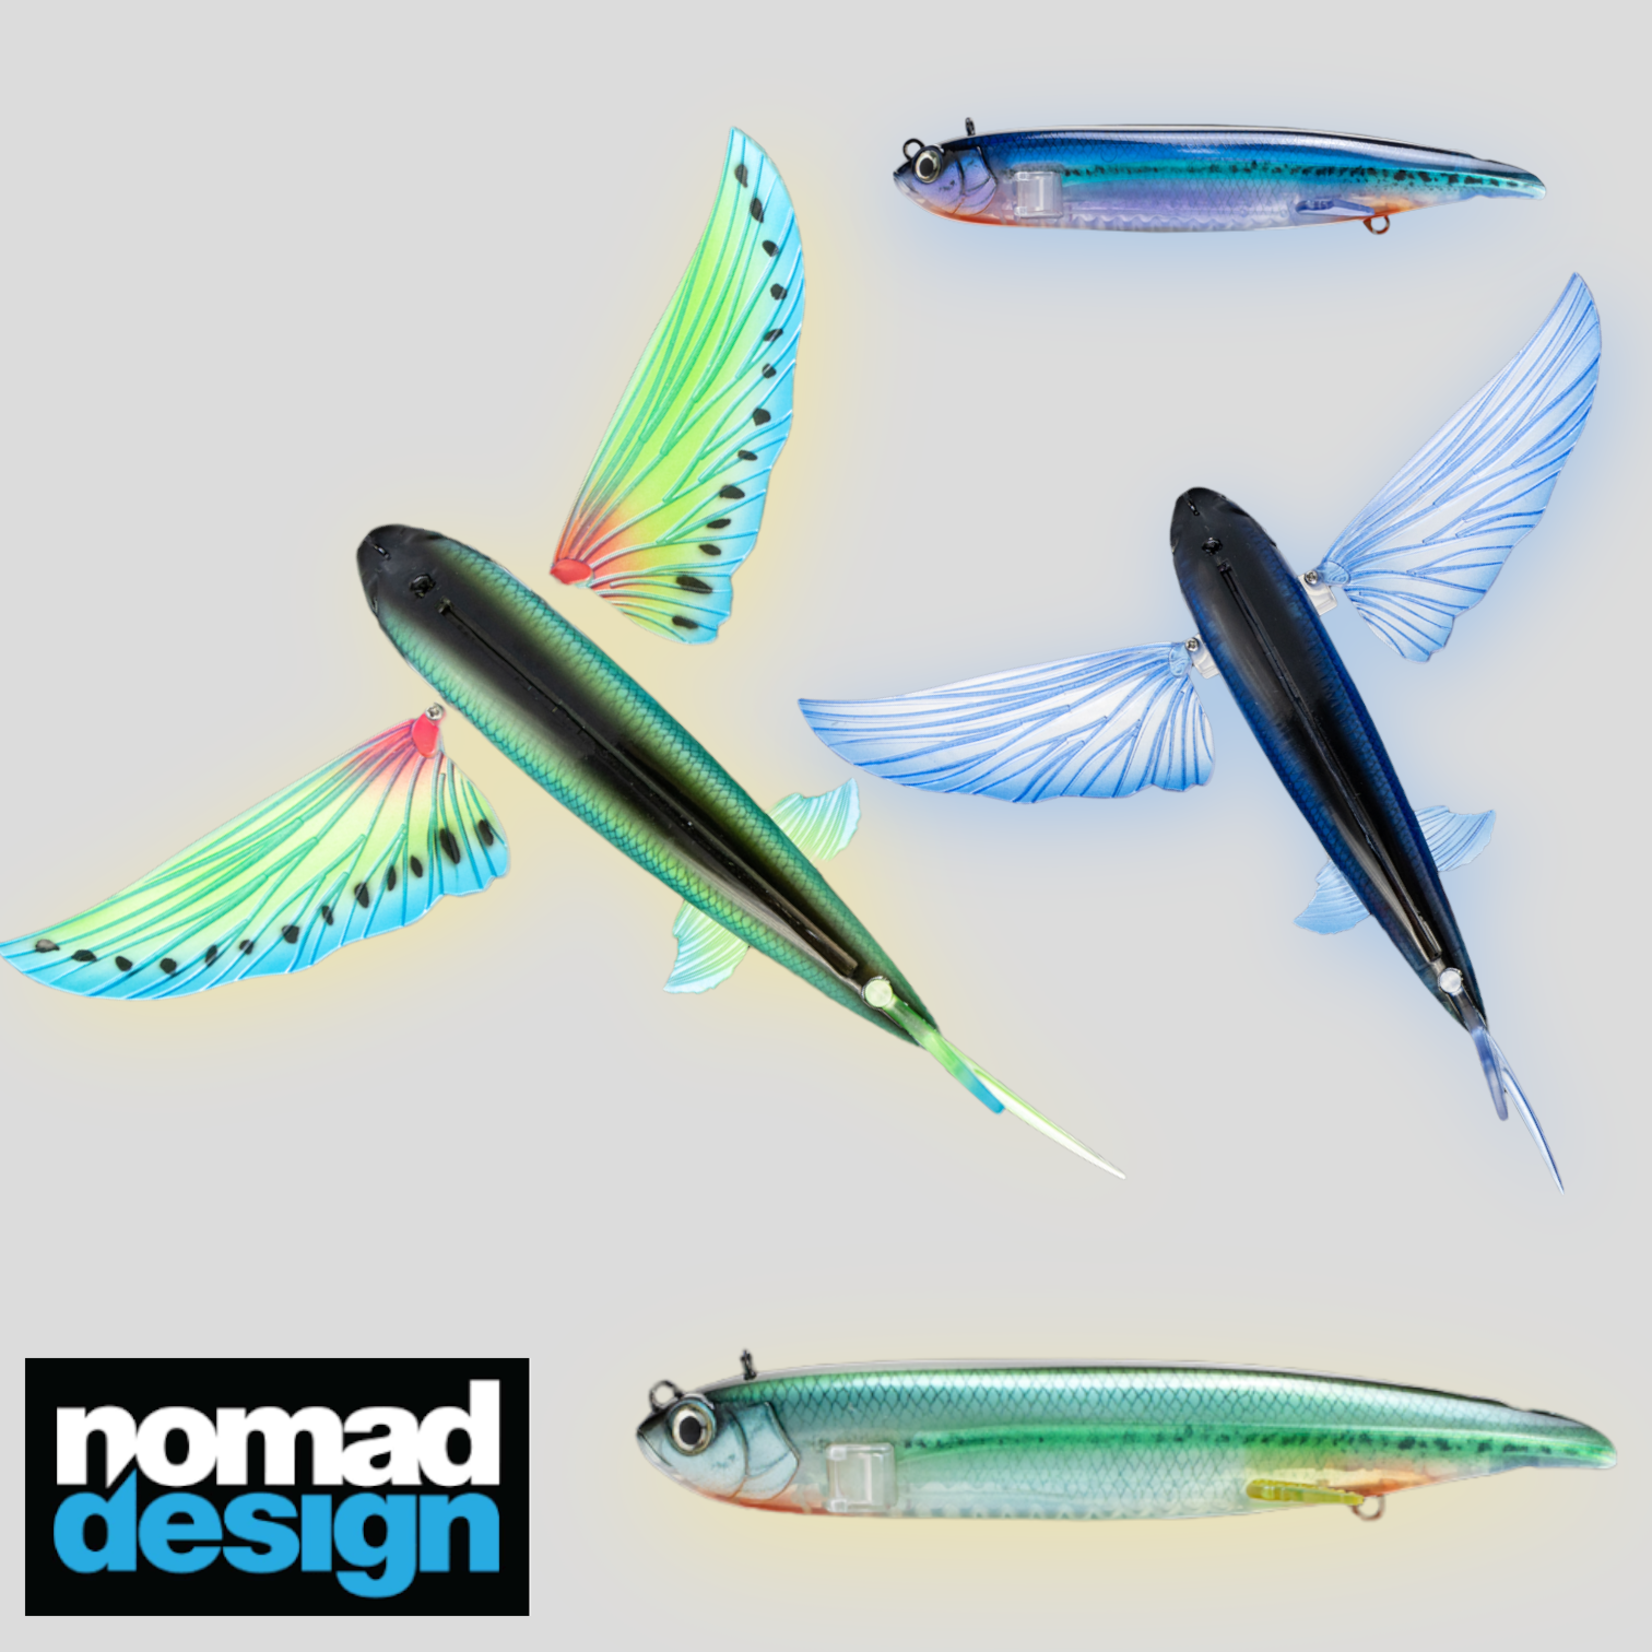 https://cdn.shoplightspeed.com/shops/665849/files/52076570/1652x1652x2/nomad-nomad-slipstream-flying-fish.jpg